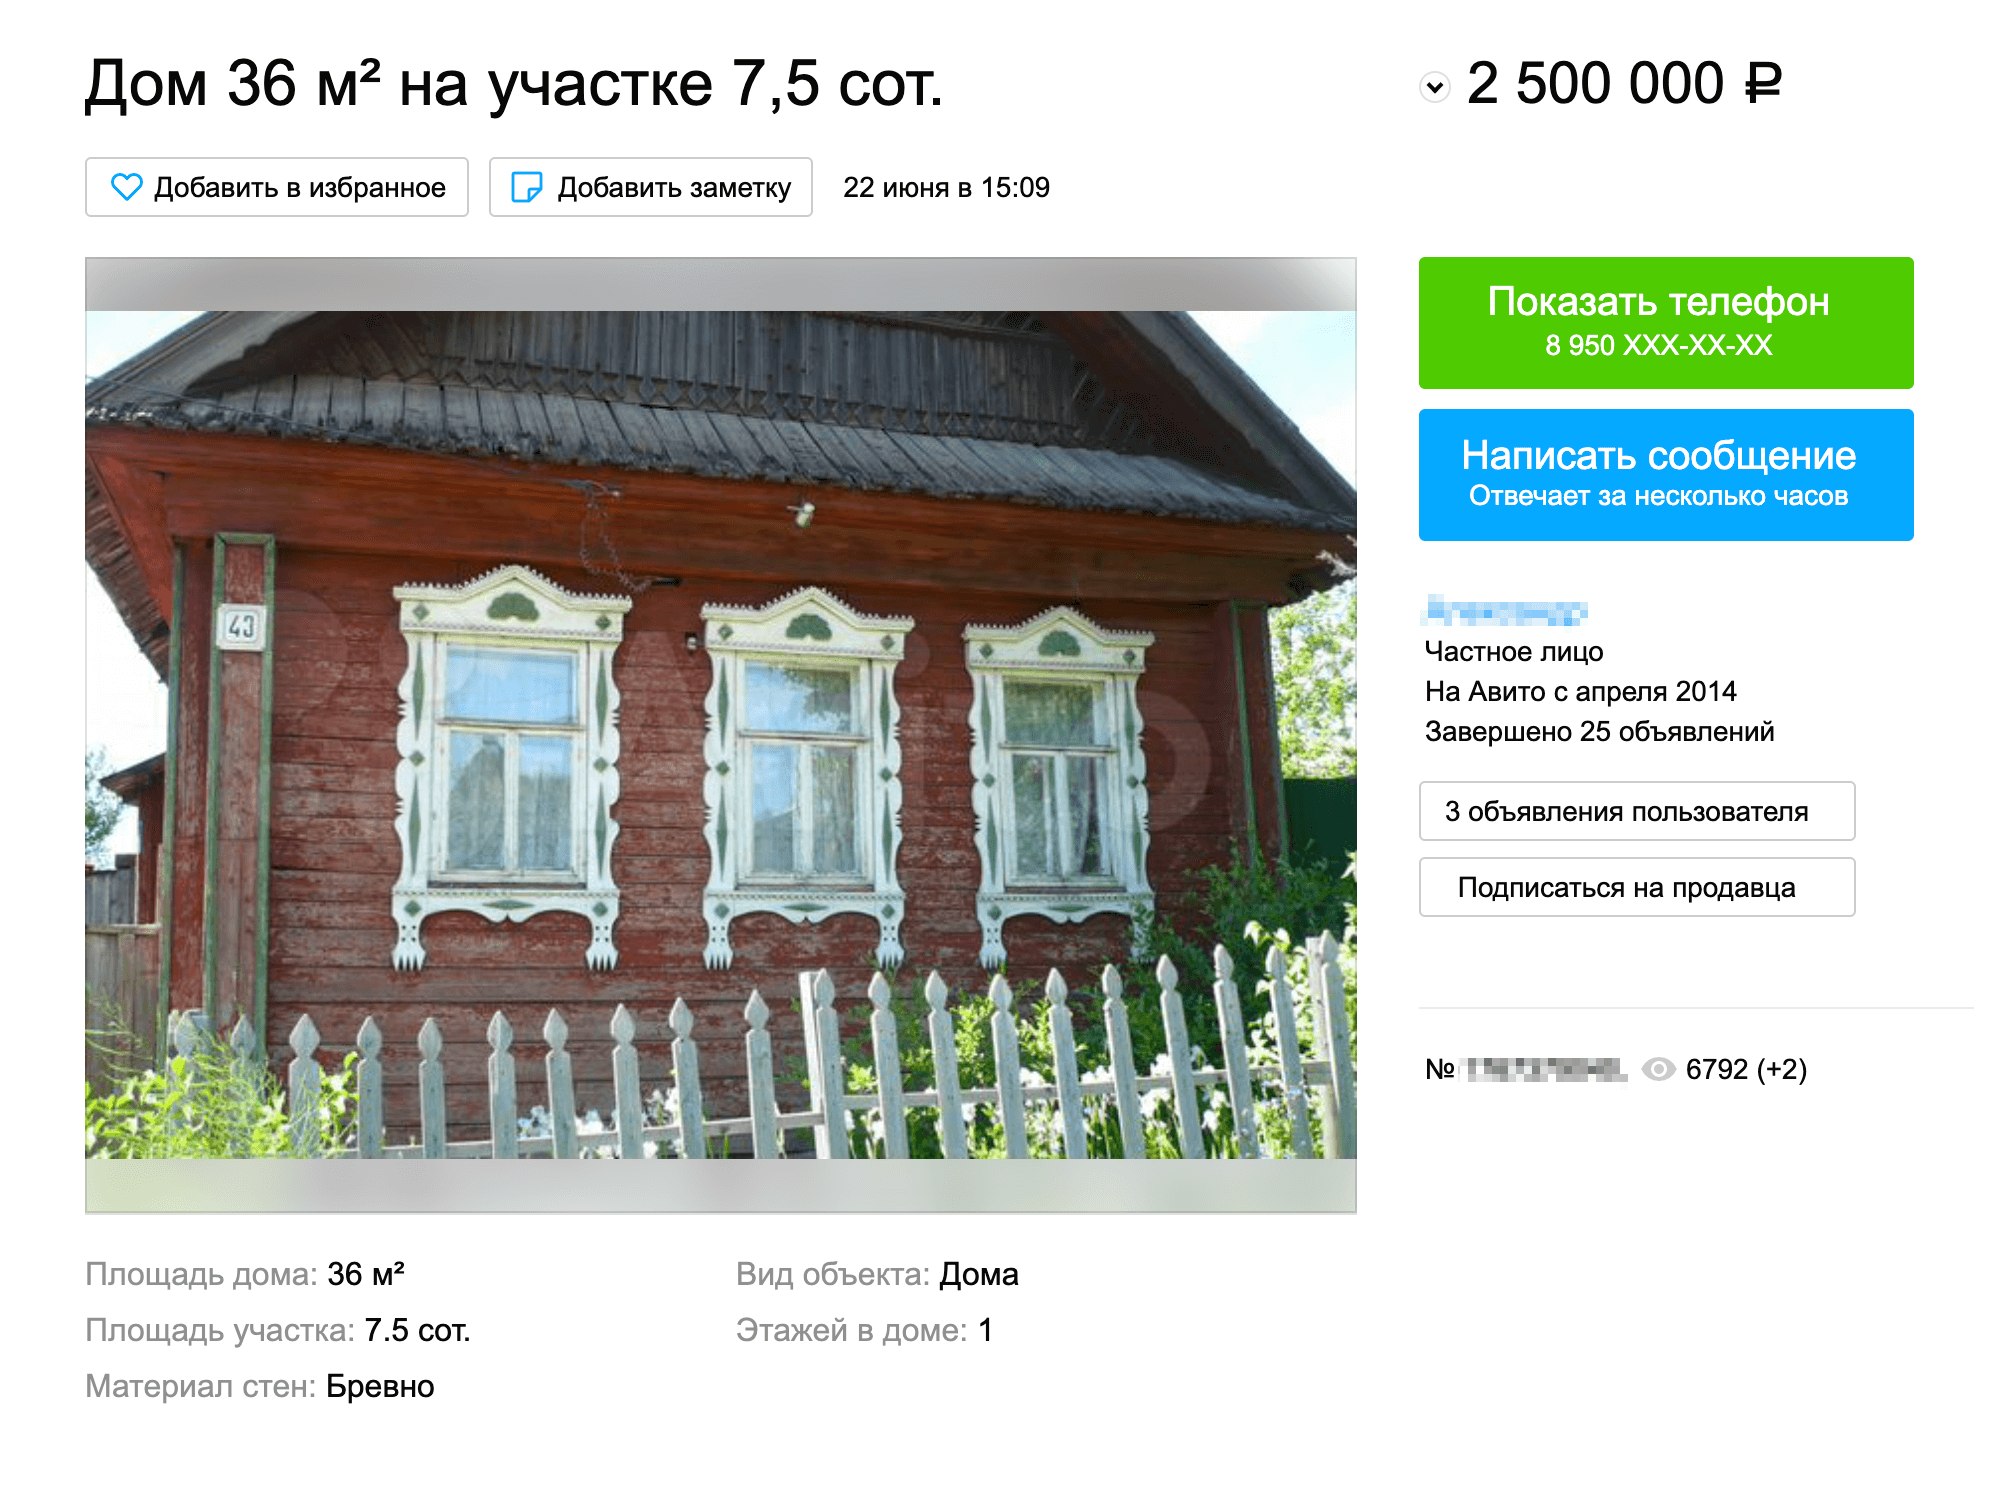 Дом в микрорайоне Болото можно купить за 2,3 млн рублей